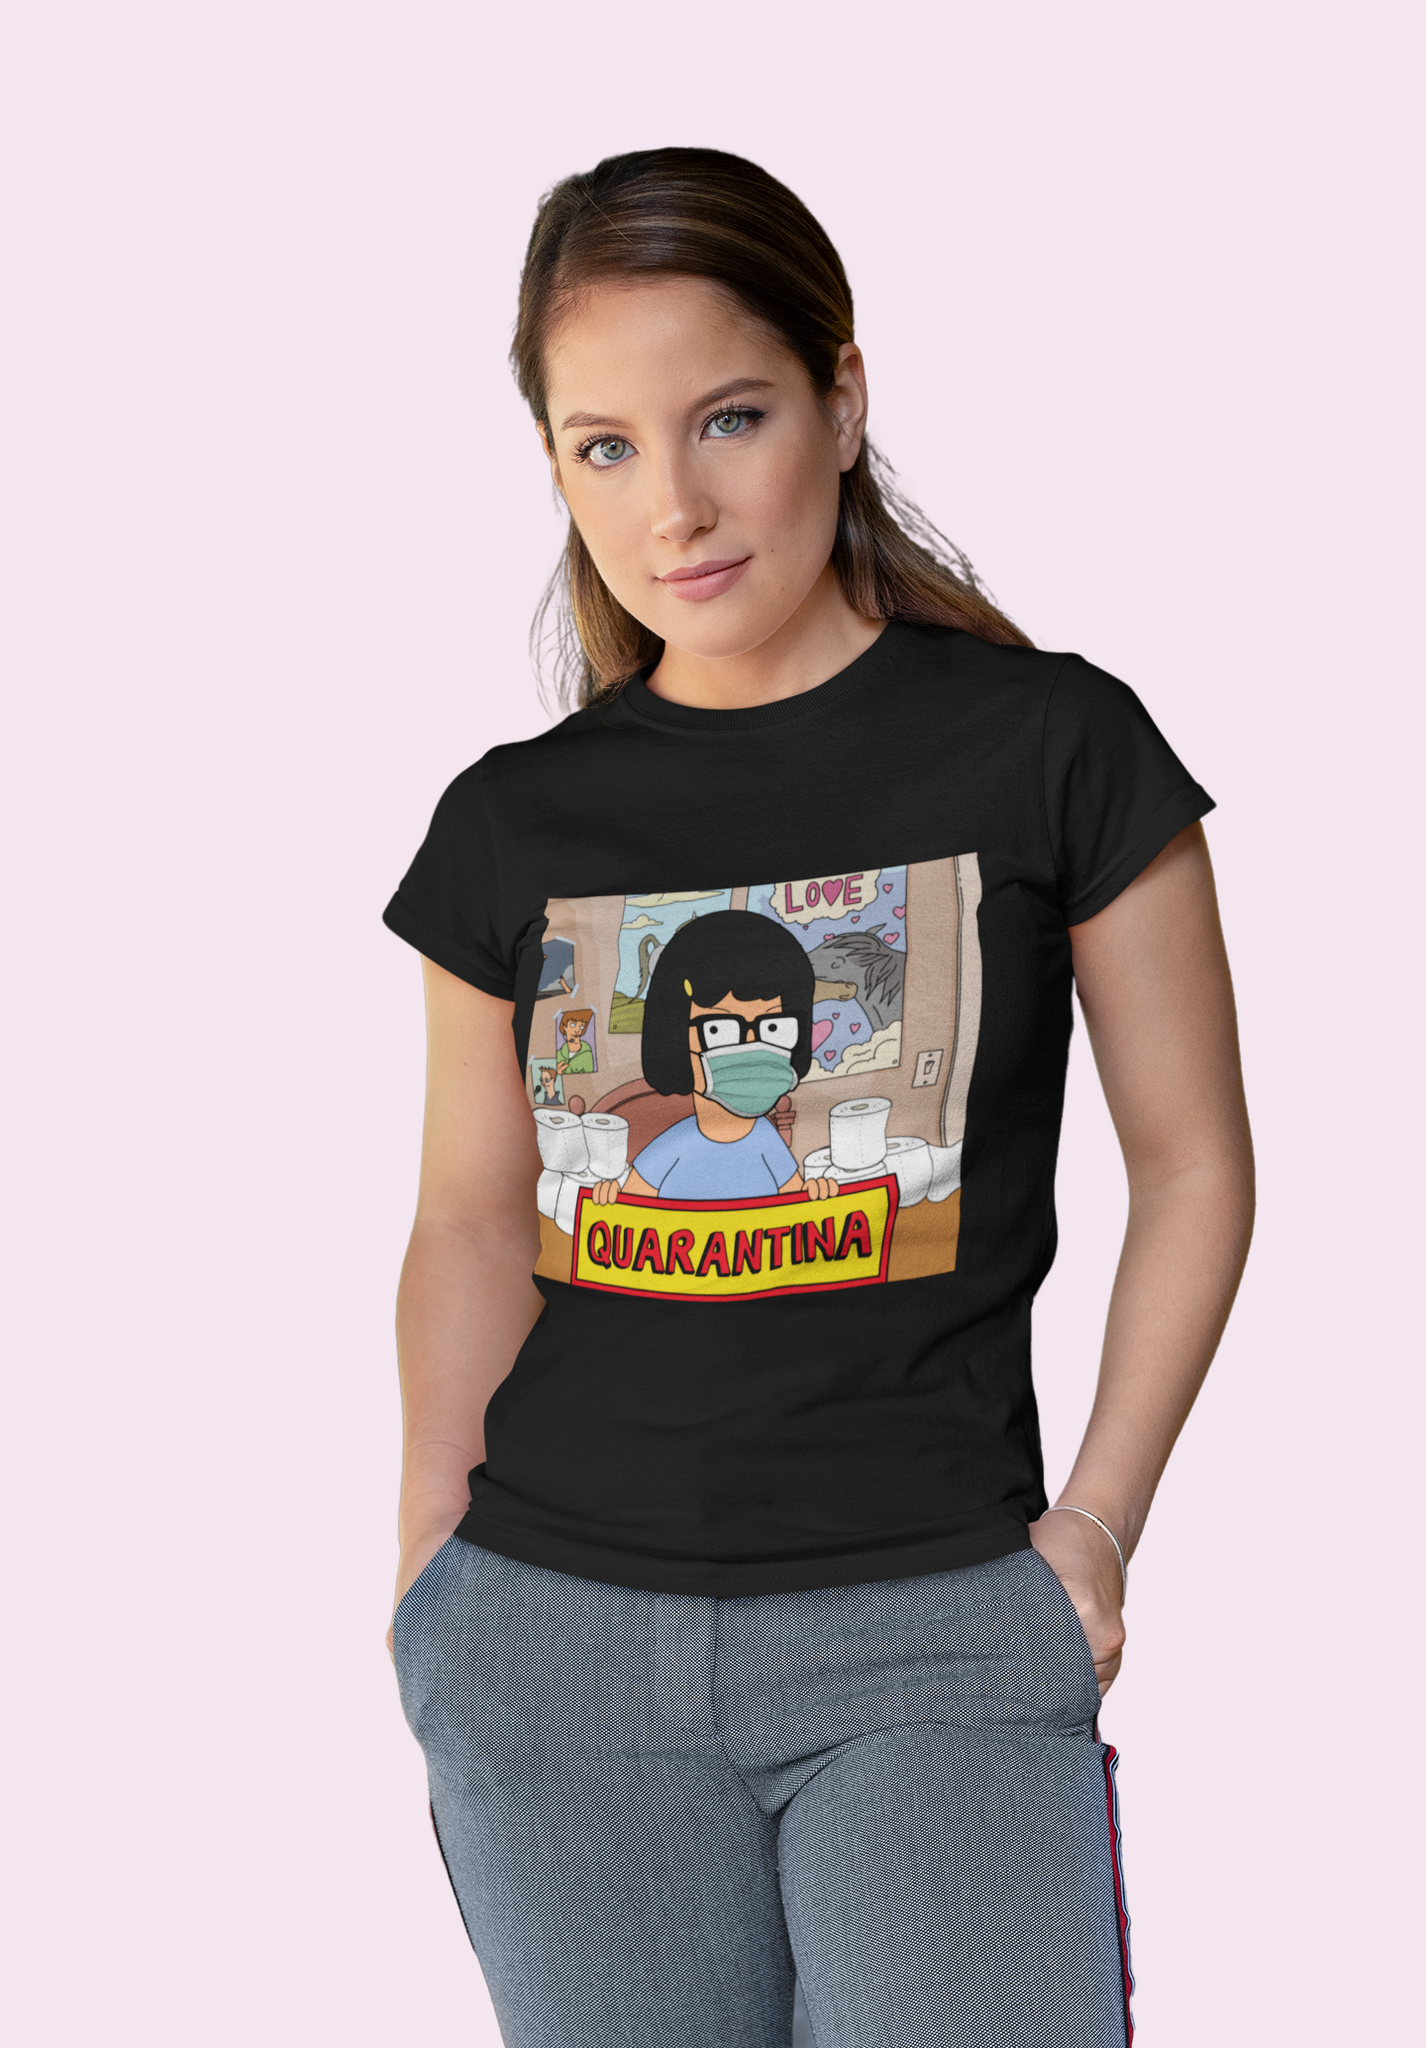 Bobs Burgers T Shirt, Tina Belcher T Shirt, Quarantina Social Distancing Tshirt